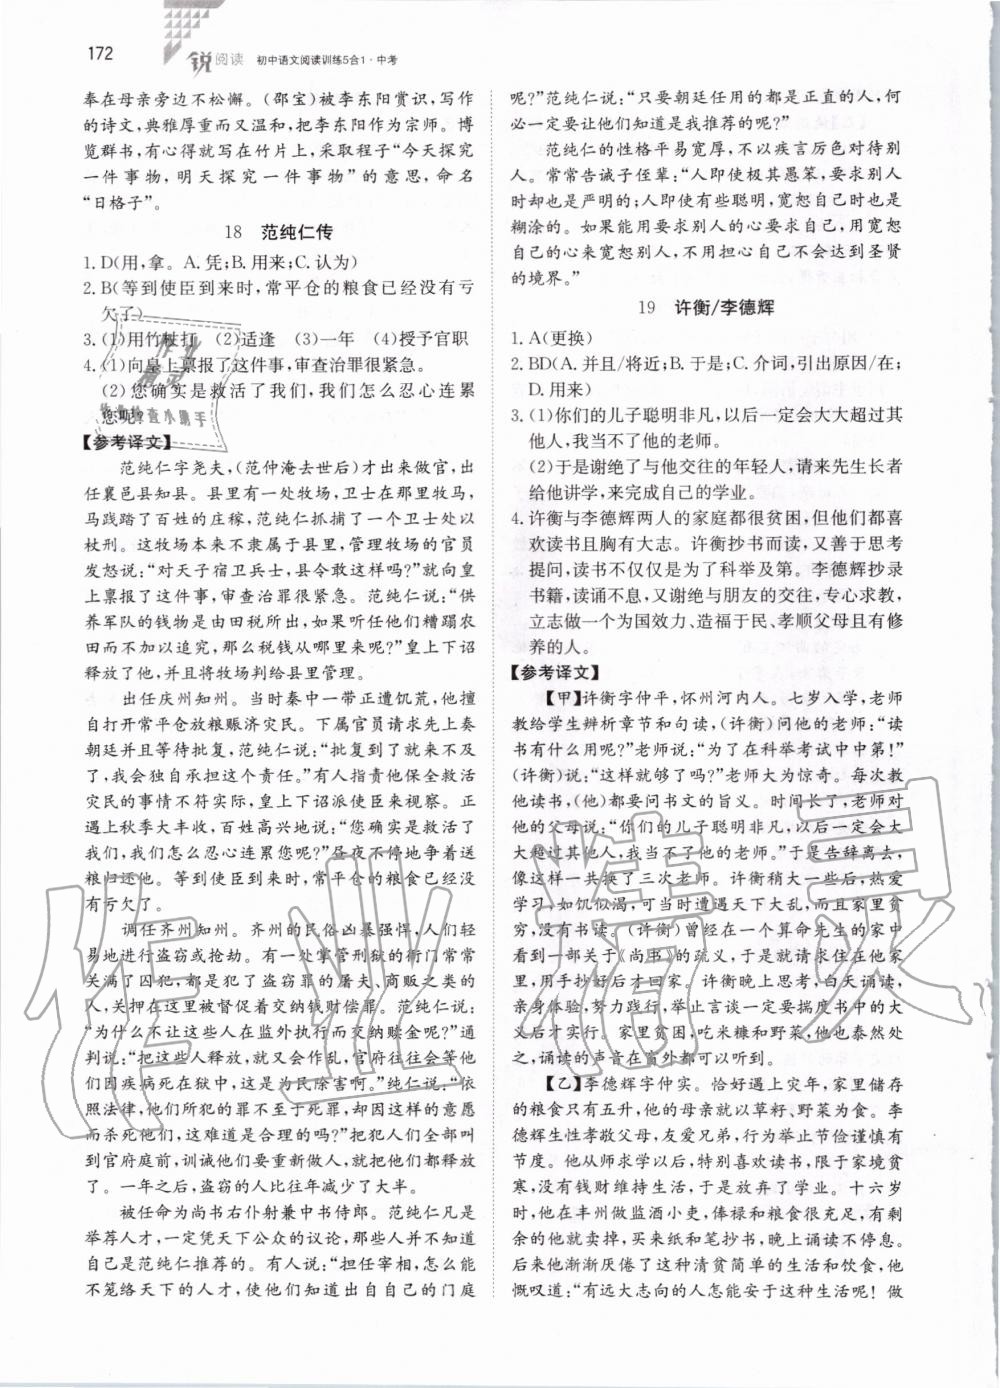 2019年锐阅读初中语文阅读训练5合1中考 第18页